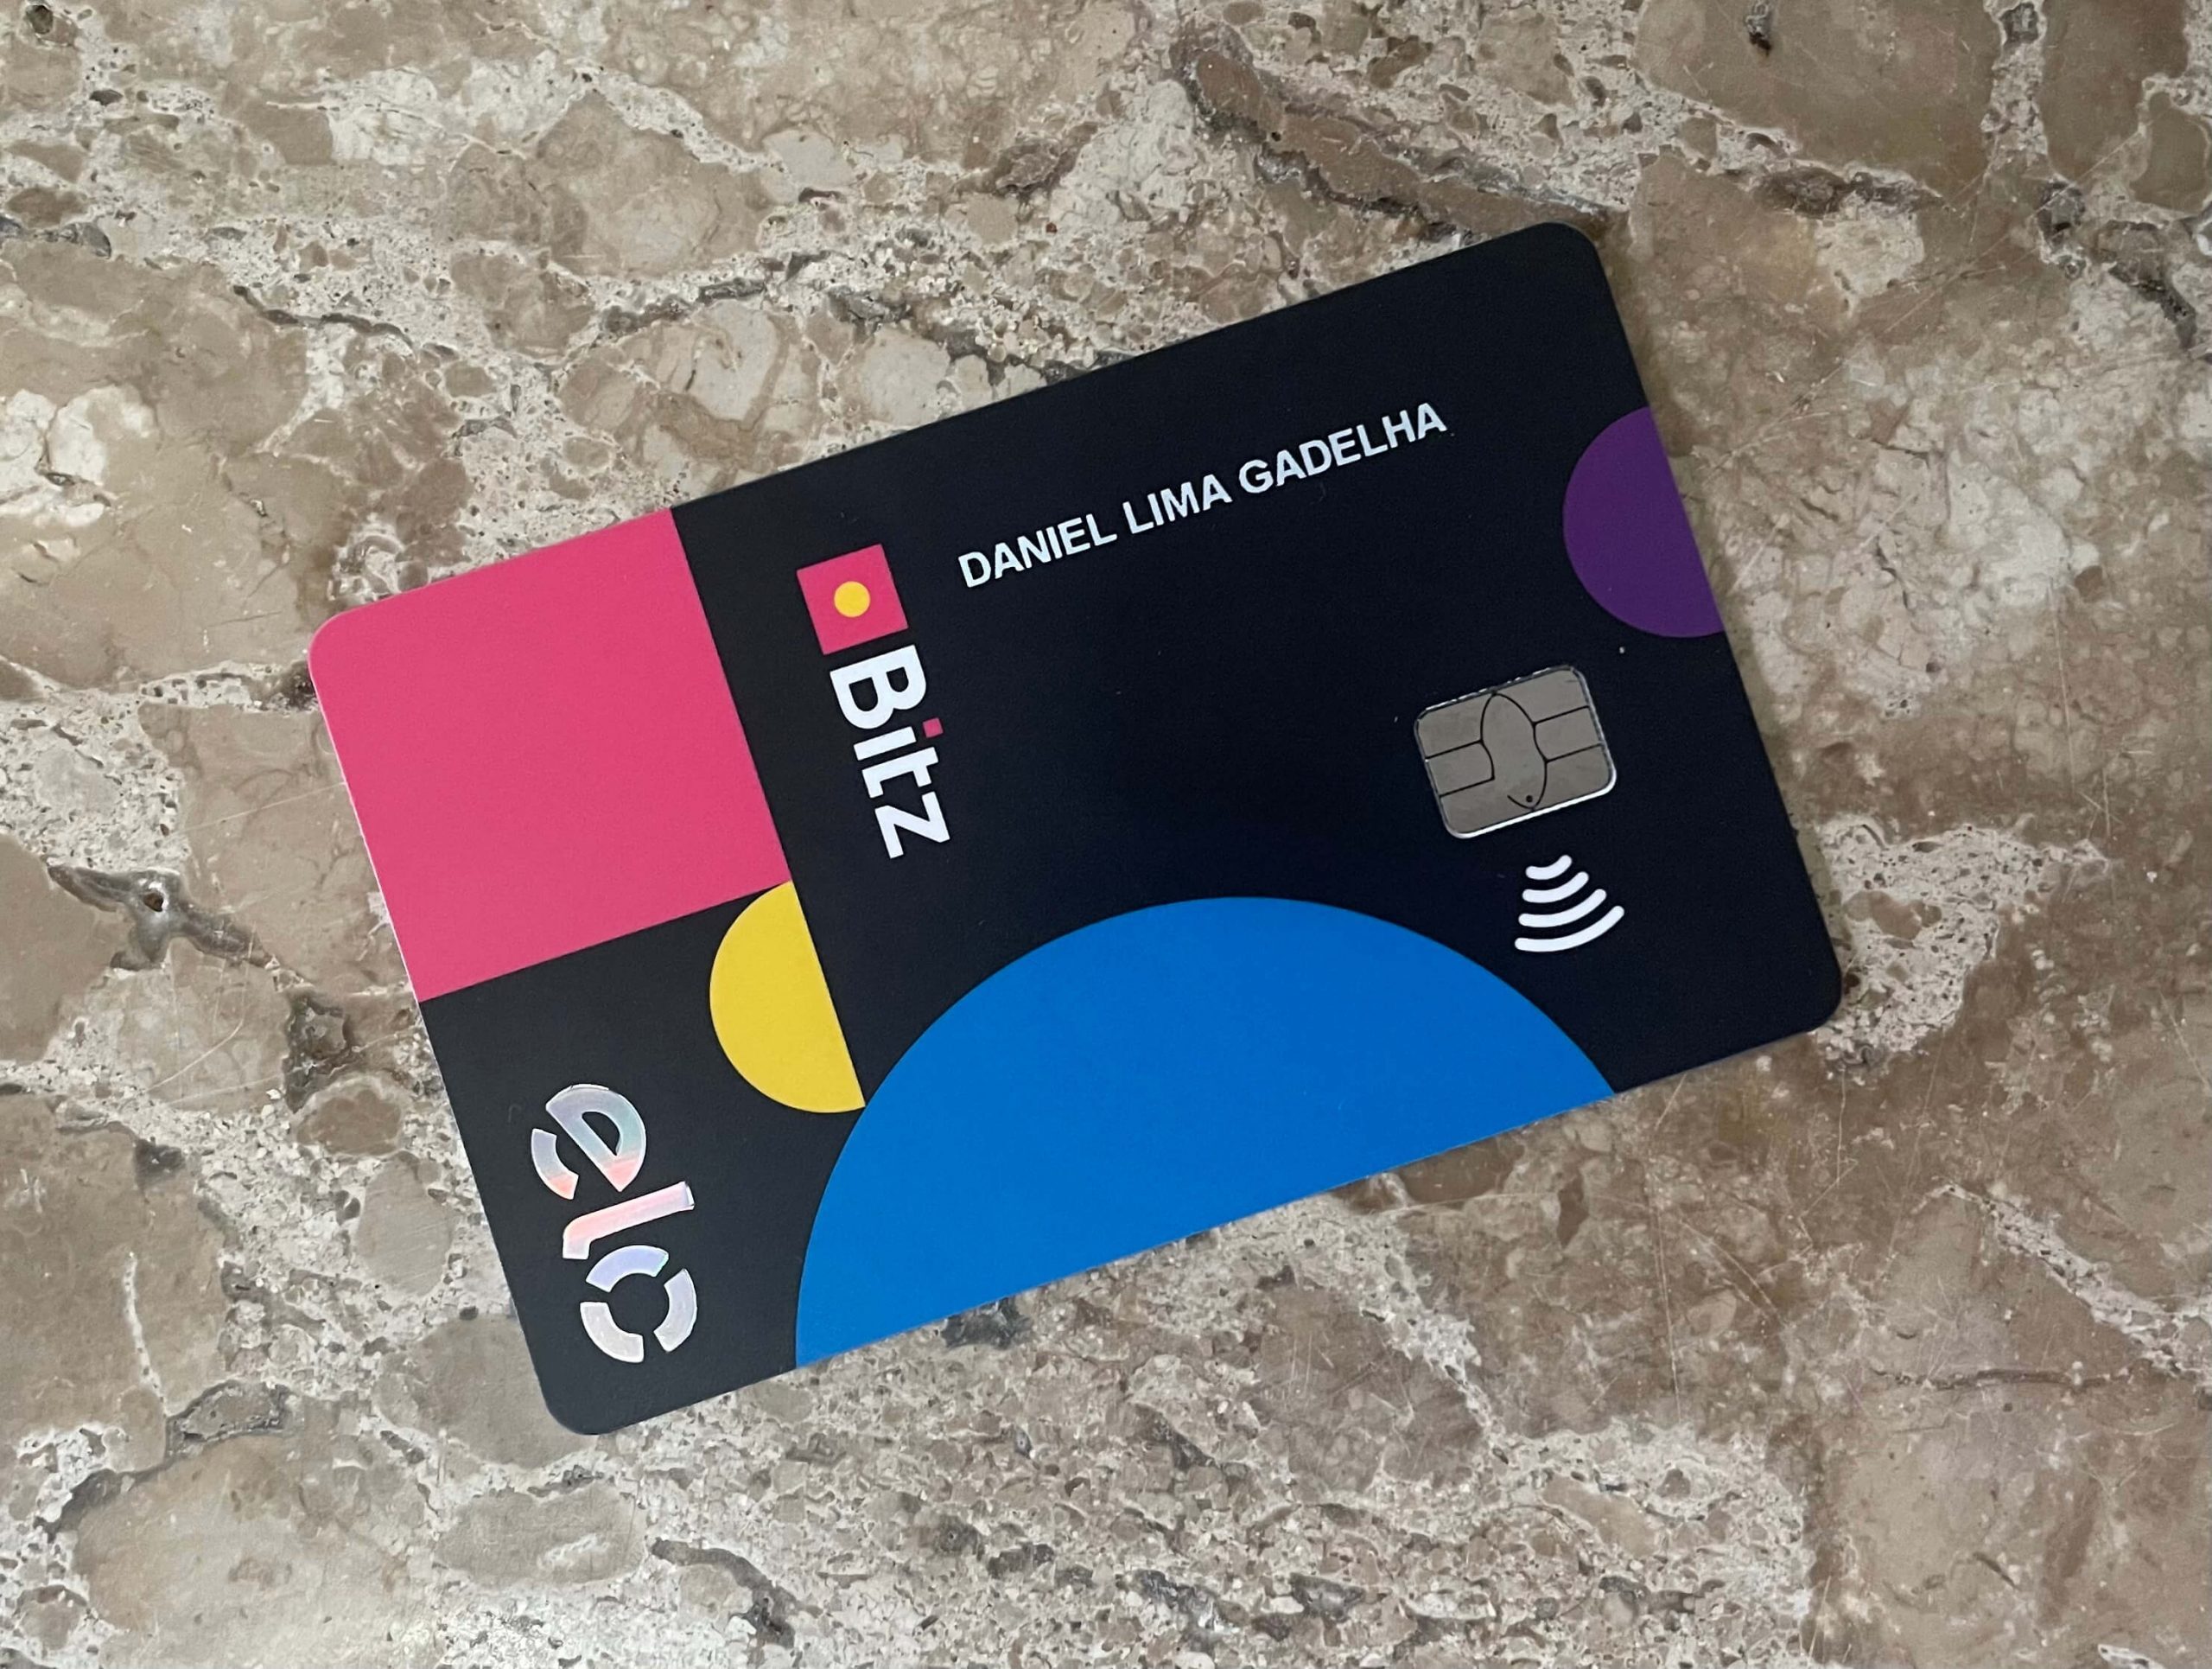 Carteira digital Bitz oferece R$ 15 de bônus para novos clientes